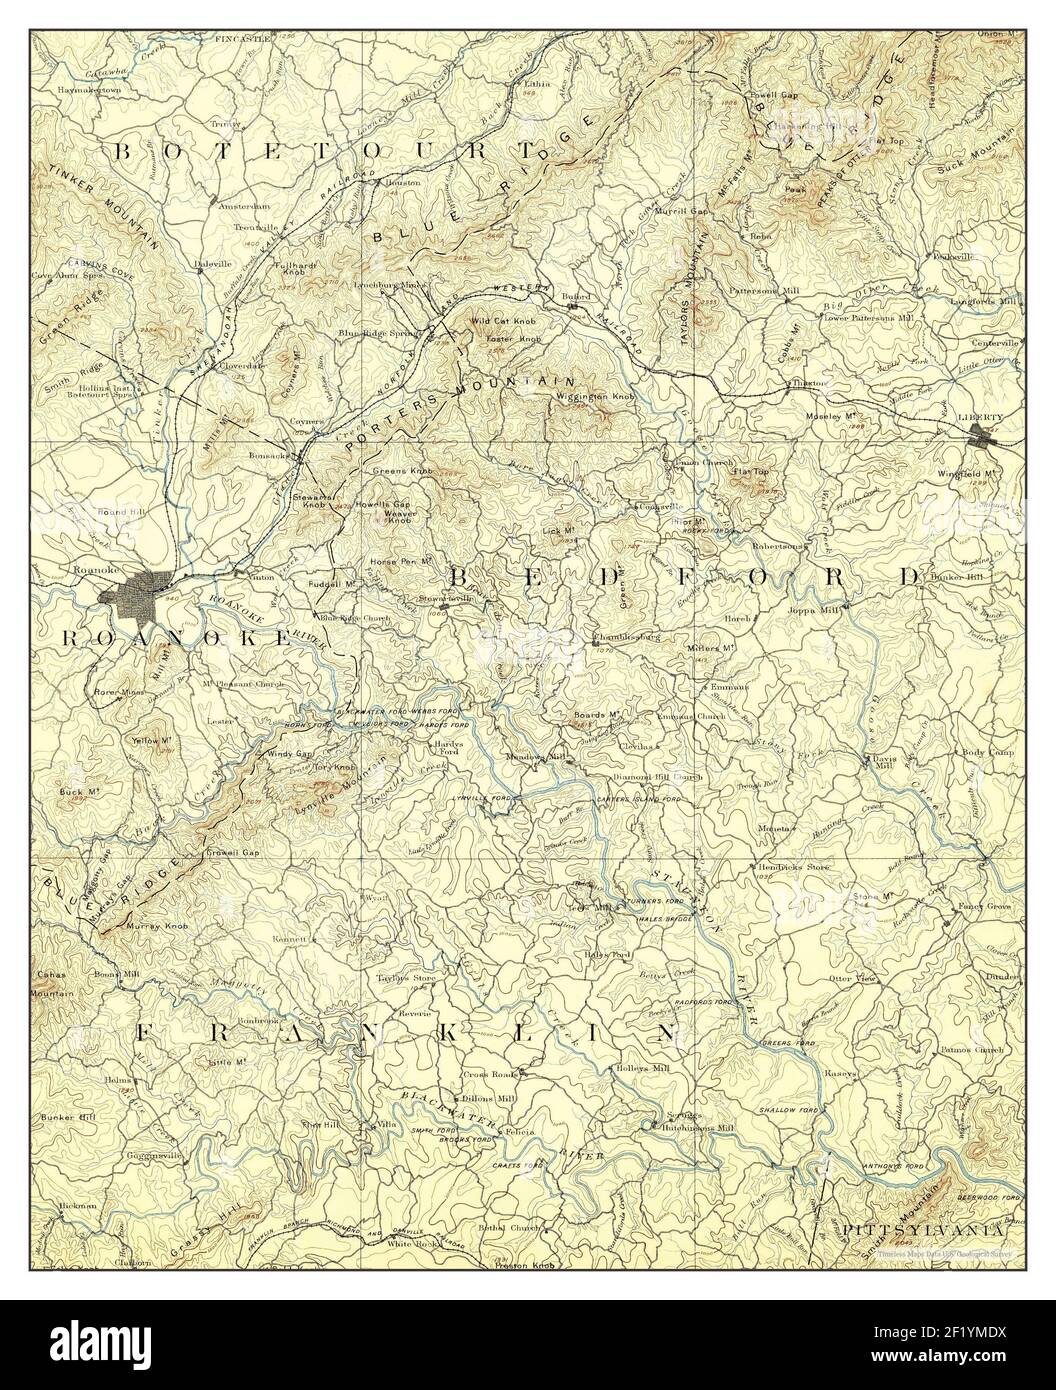 Roanoke, Virginie, carte 1891, 1:125000, États-Unis d'Amérique par Timeless Maps, données U.S. Geological Survey Banque D'Images